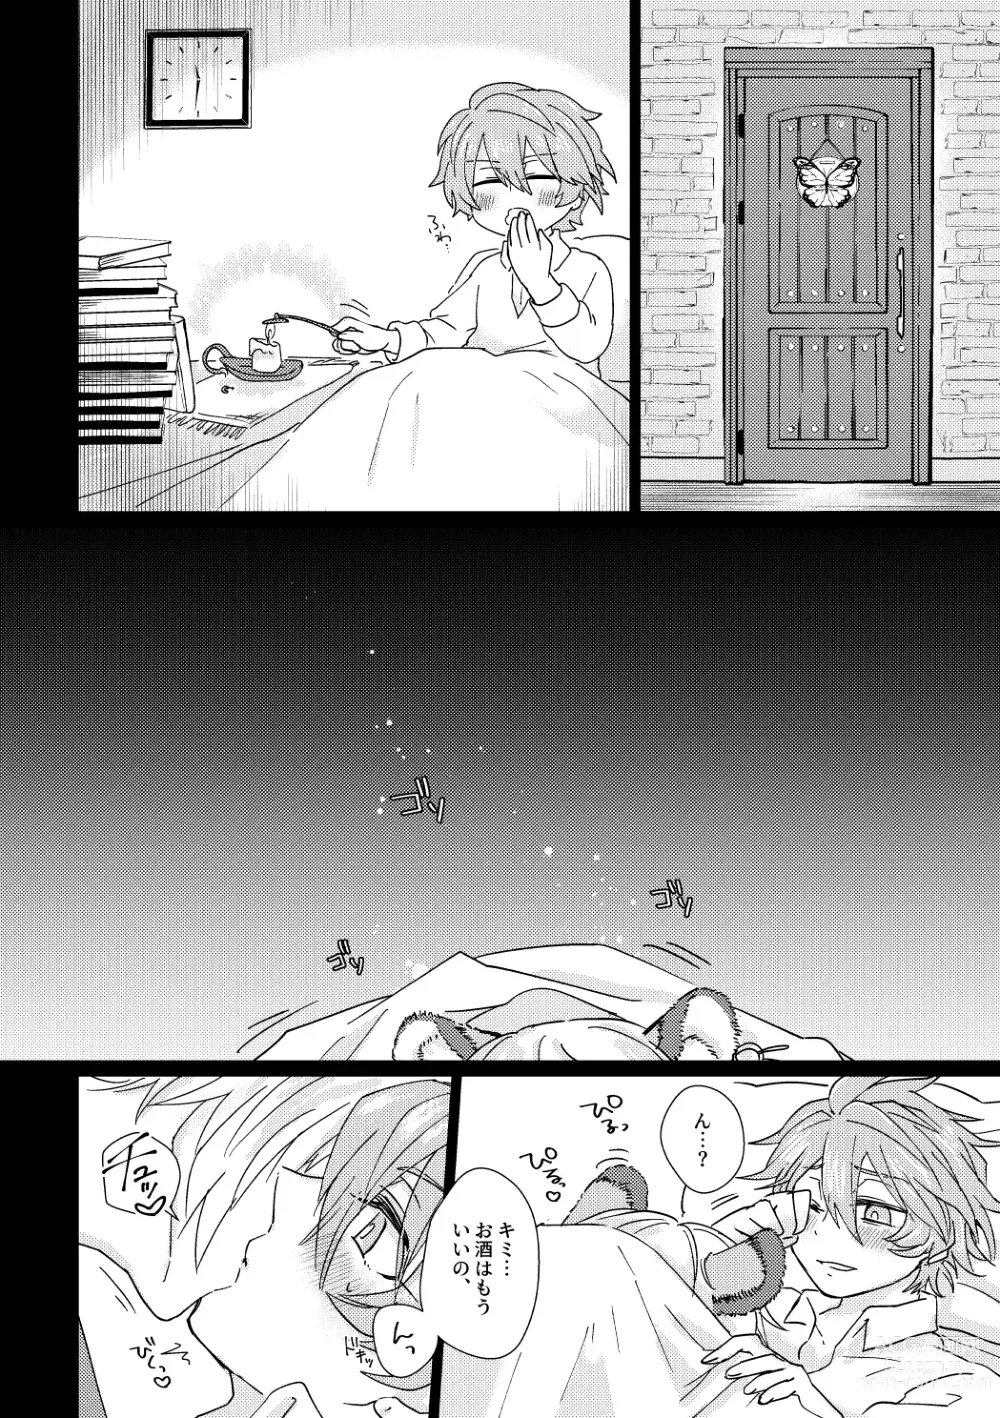 Page 3 of doujinshi Kagami 3P Hon Flauros x Andras with Akuma no Kagami